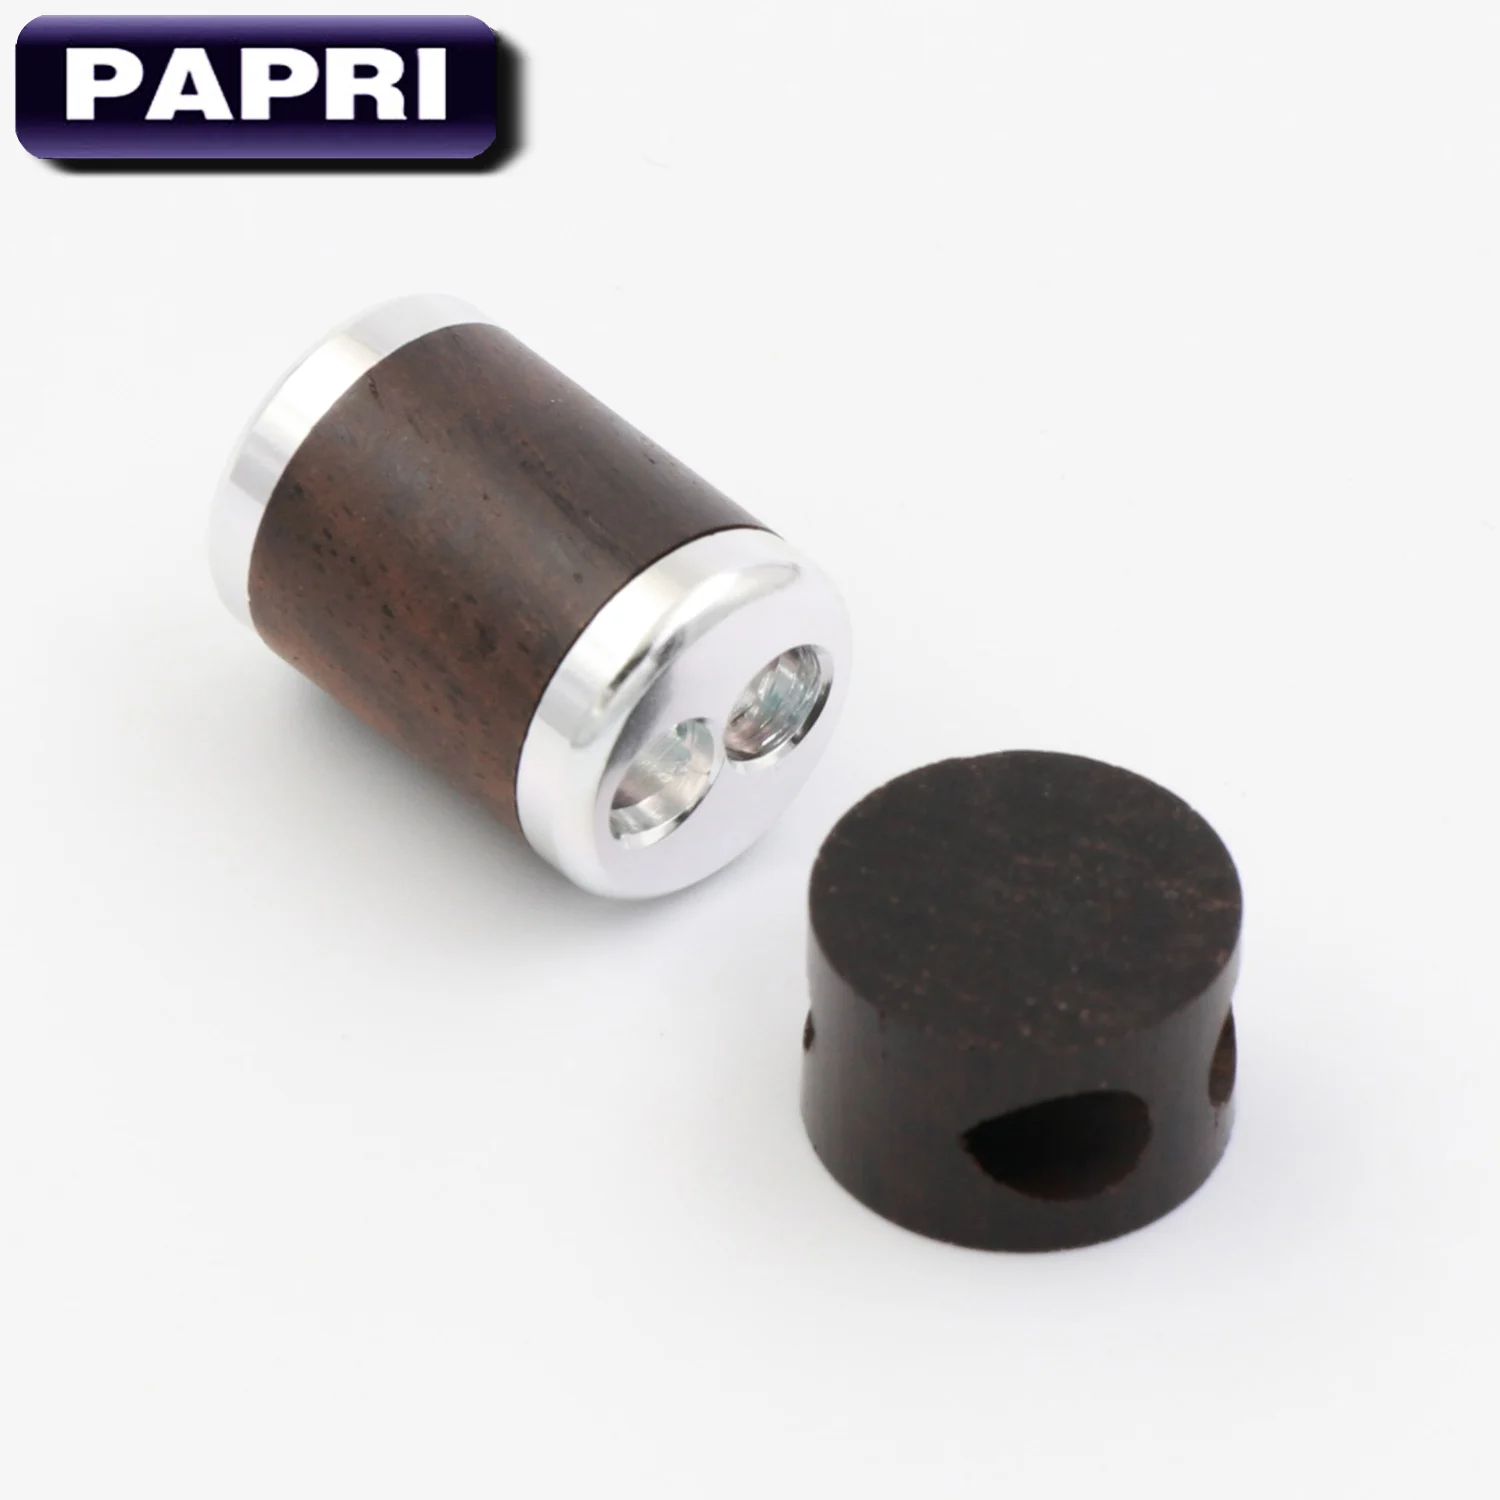 PAPRI новейший 1 шт. адаптер слайдер для DIY обновления кабеля наушников сплиттер один алюминиевый сплав сандалового дерева кабель брюки